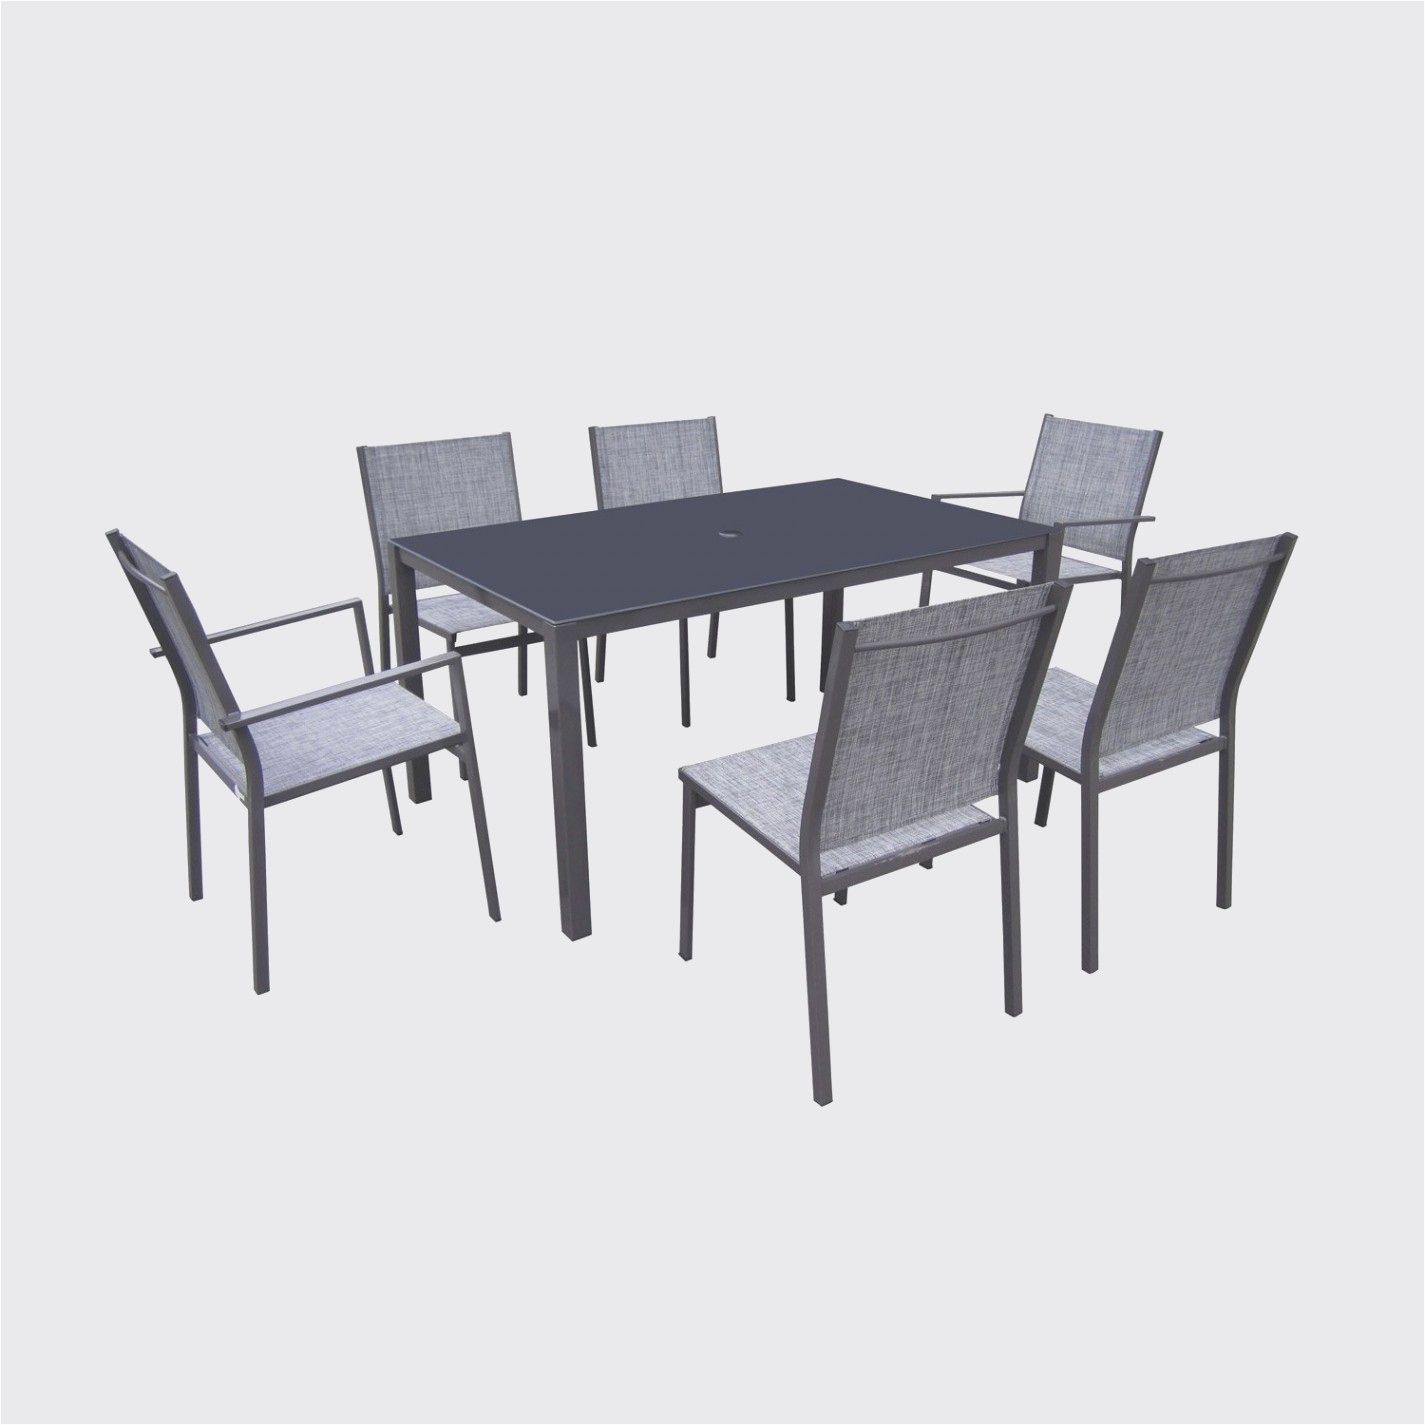 Table Pliante Jardin Inspirant Table Et Chaise Pliante Table Et Chaise Pliante with Table